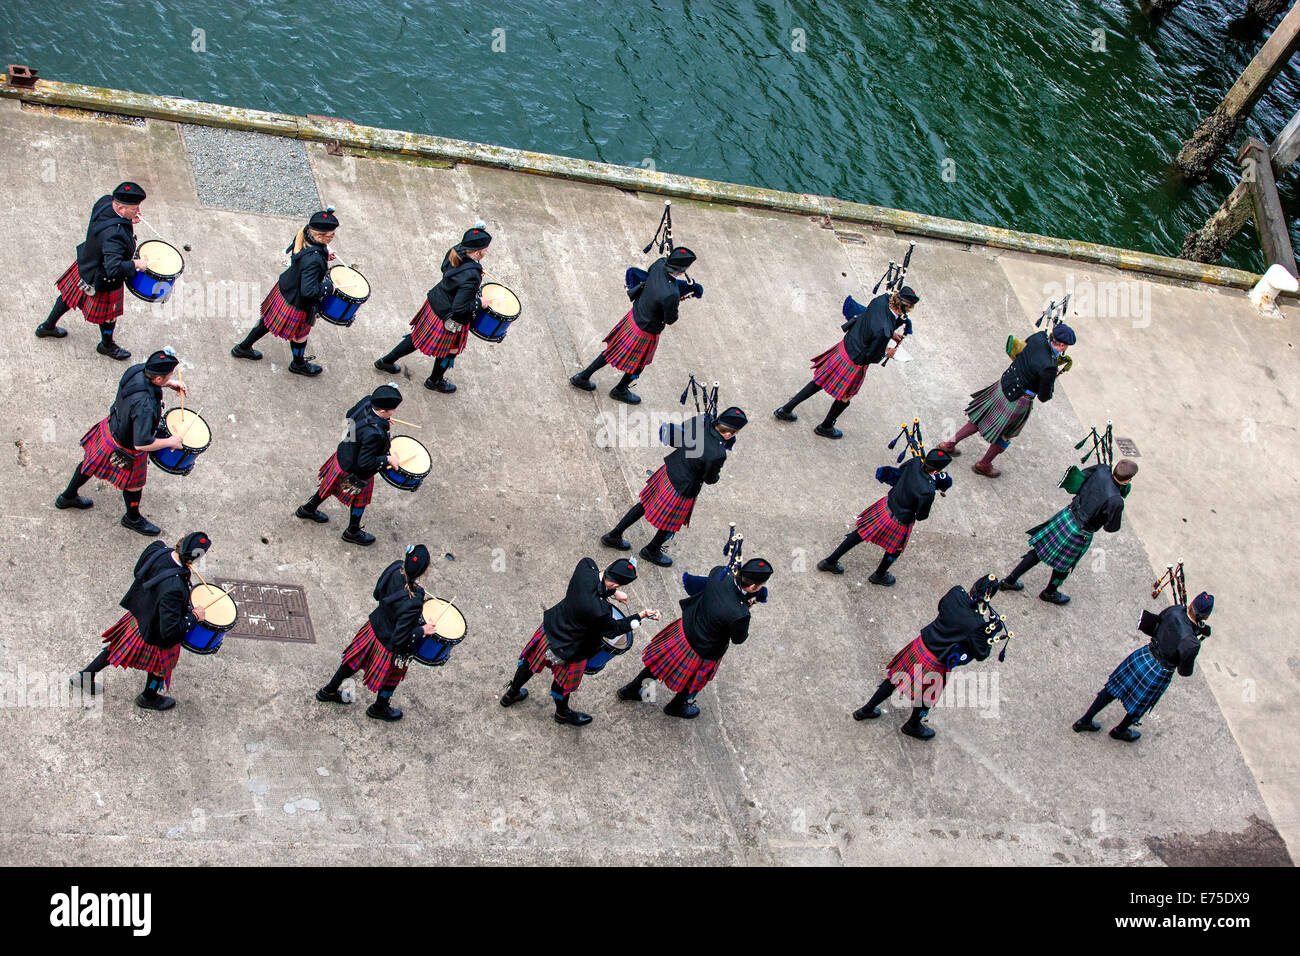 Un groupe écossais agit comme hôte sur l'arrivée de paquebots transatlantiques dans le port d'Invergordon en Ecosse. L'orchestre Banque D'Images